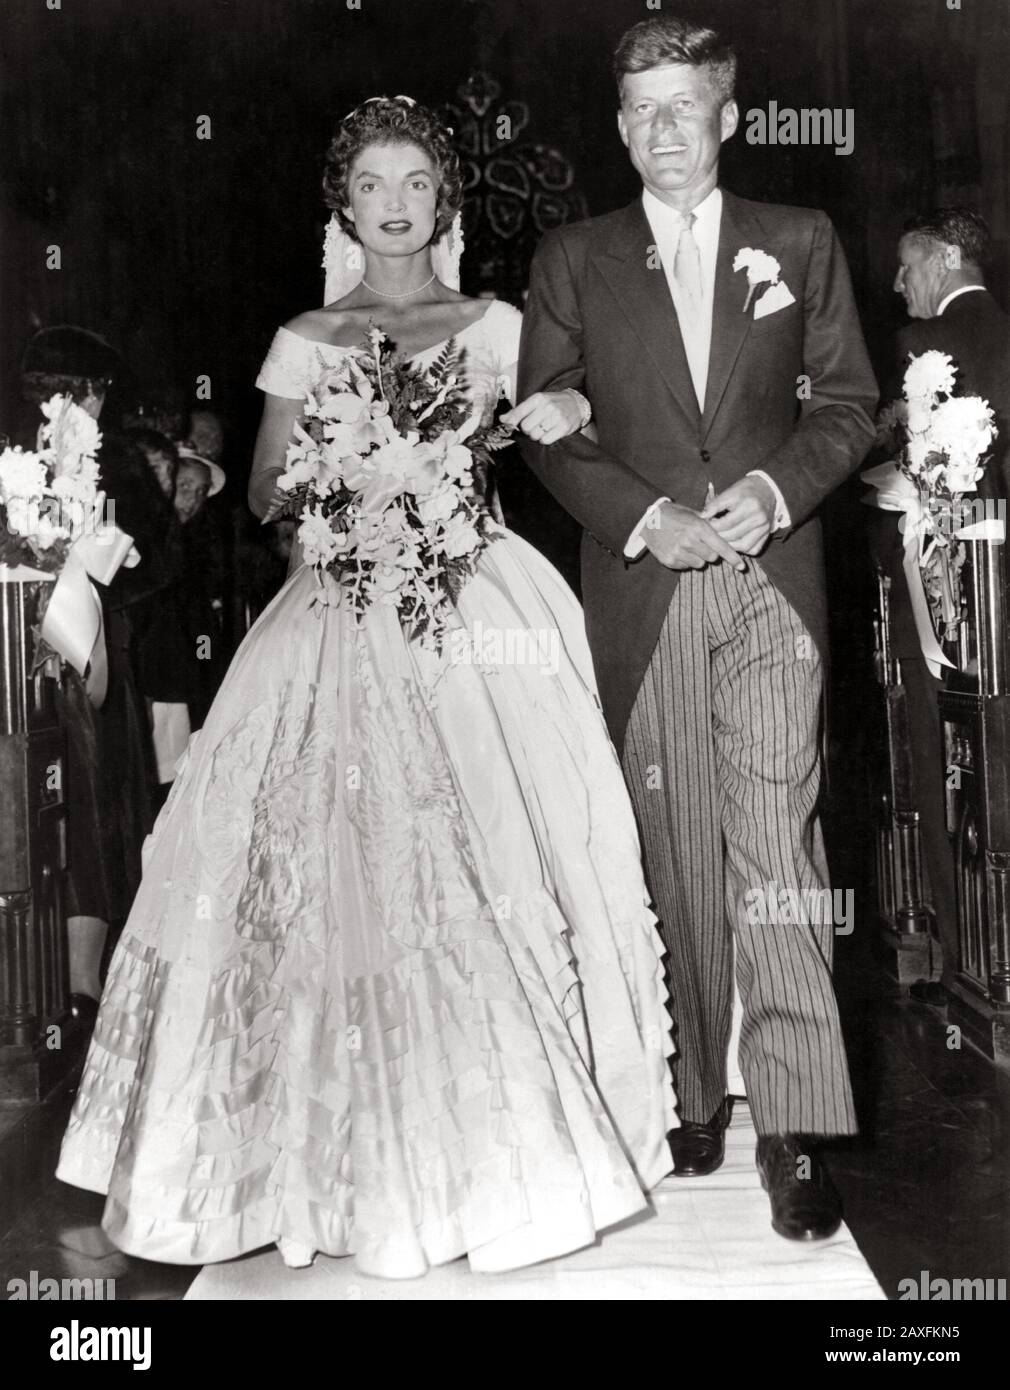 1953 , 12 september , Newport, Rhode Island, USA : The future american President JOHN Fitzgerald KENNEDY ( 1917 - 1963 ), Democratic senator for Massachusetts , escorts his bride Jacqueline Lee Bouvier ( 1929 - 1994 ) down the church after their wedding ceremony  - PRESIDENTE DEGLI STATI UNITI D' AMERICA - cravatta  - tie - CASA BIANCA - WHITE HOUSE - POLITICO - POLITIC - POLITICIAN - POLITICA  - sposalizio - matrimonio - WEDDING DRESS - MARRIAGE - SPOSI - MARITO E MOGLIE - bouquet - flowers - fiori - garofano - canation - pochette - fazzoletto nel taschino - abito da sposa - bridal dress - Stock Photo